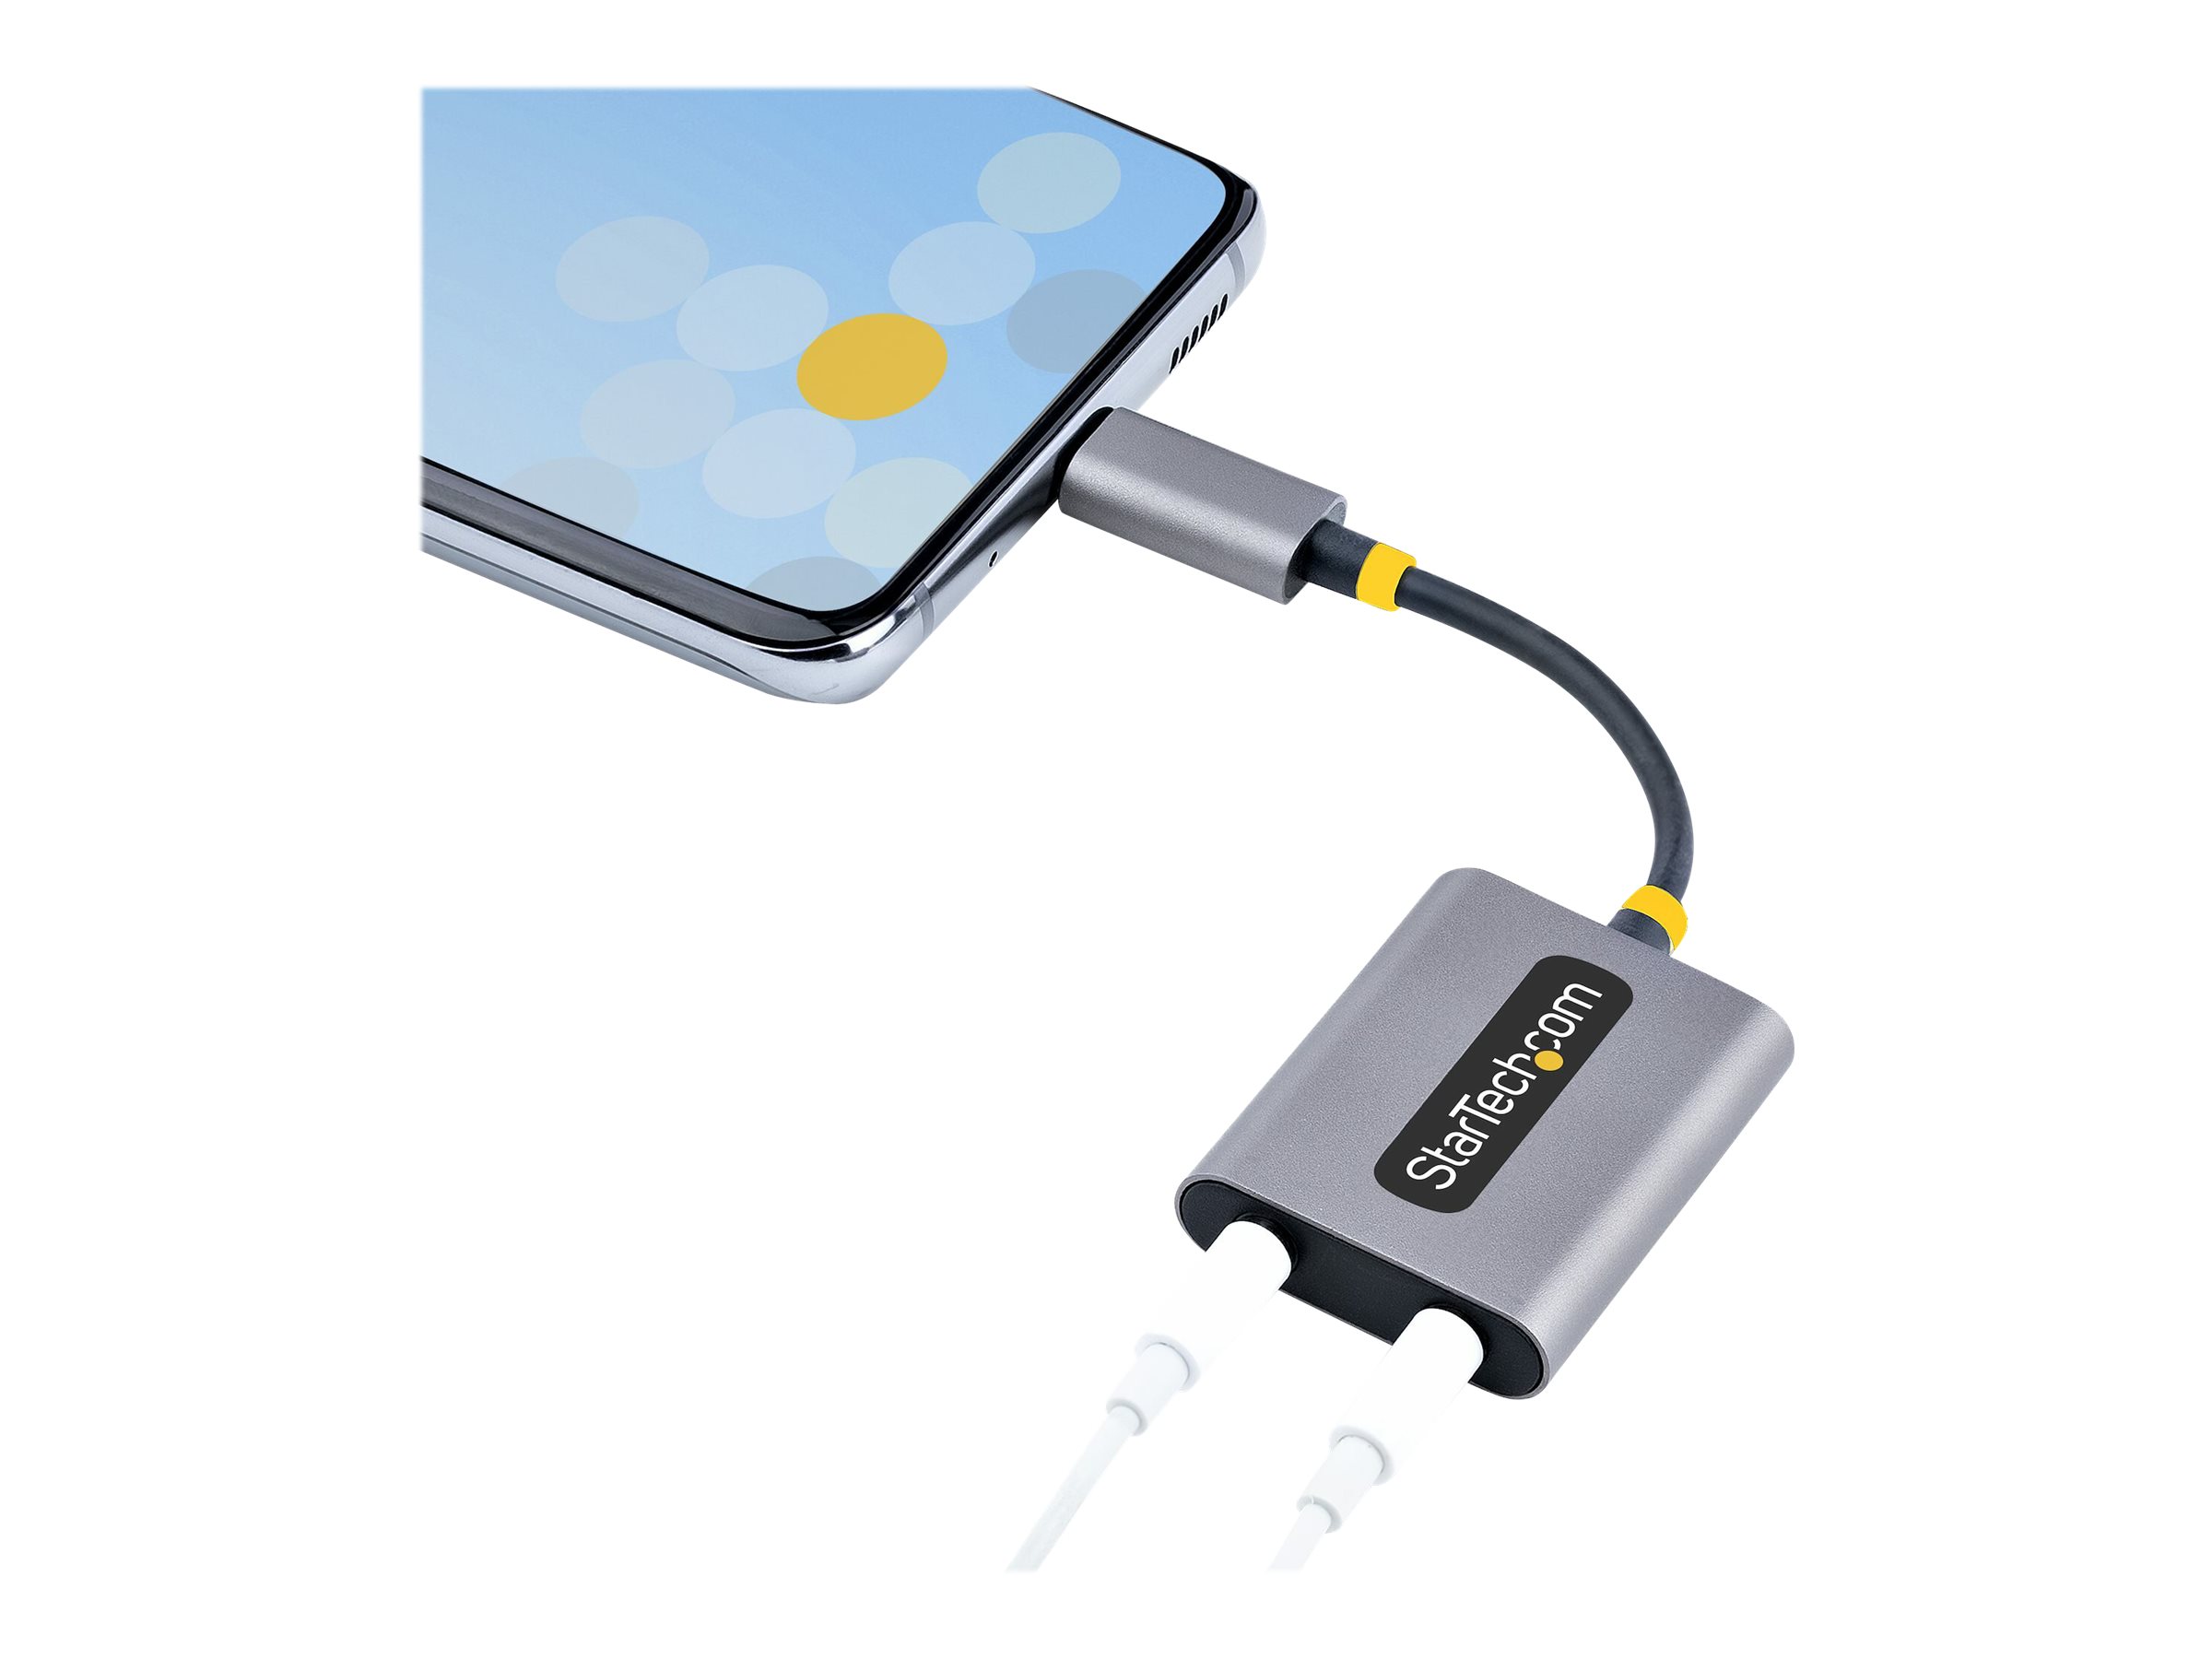 Adaptateur Audio USB-C Mâle vers Double Jack 3.5mm Femelle, Casque